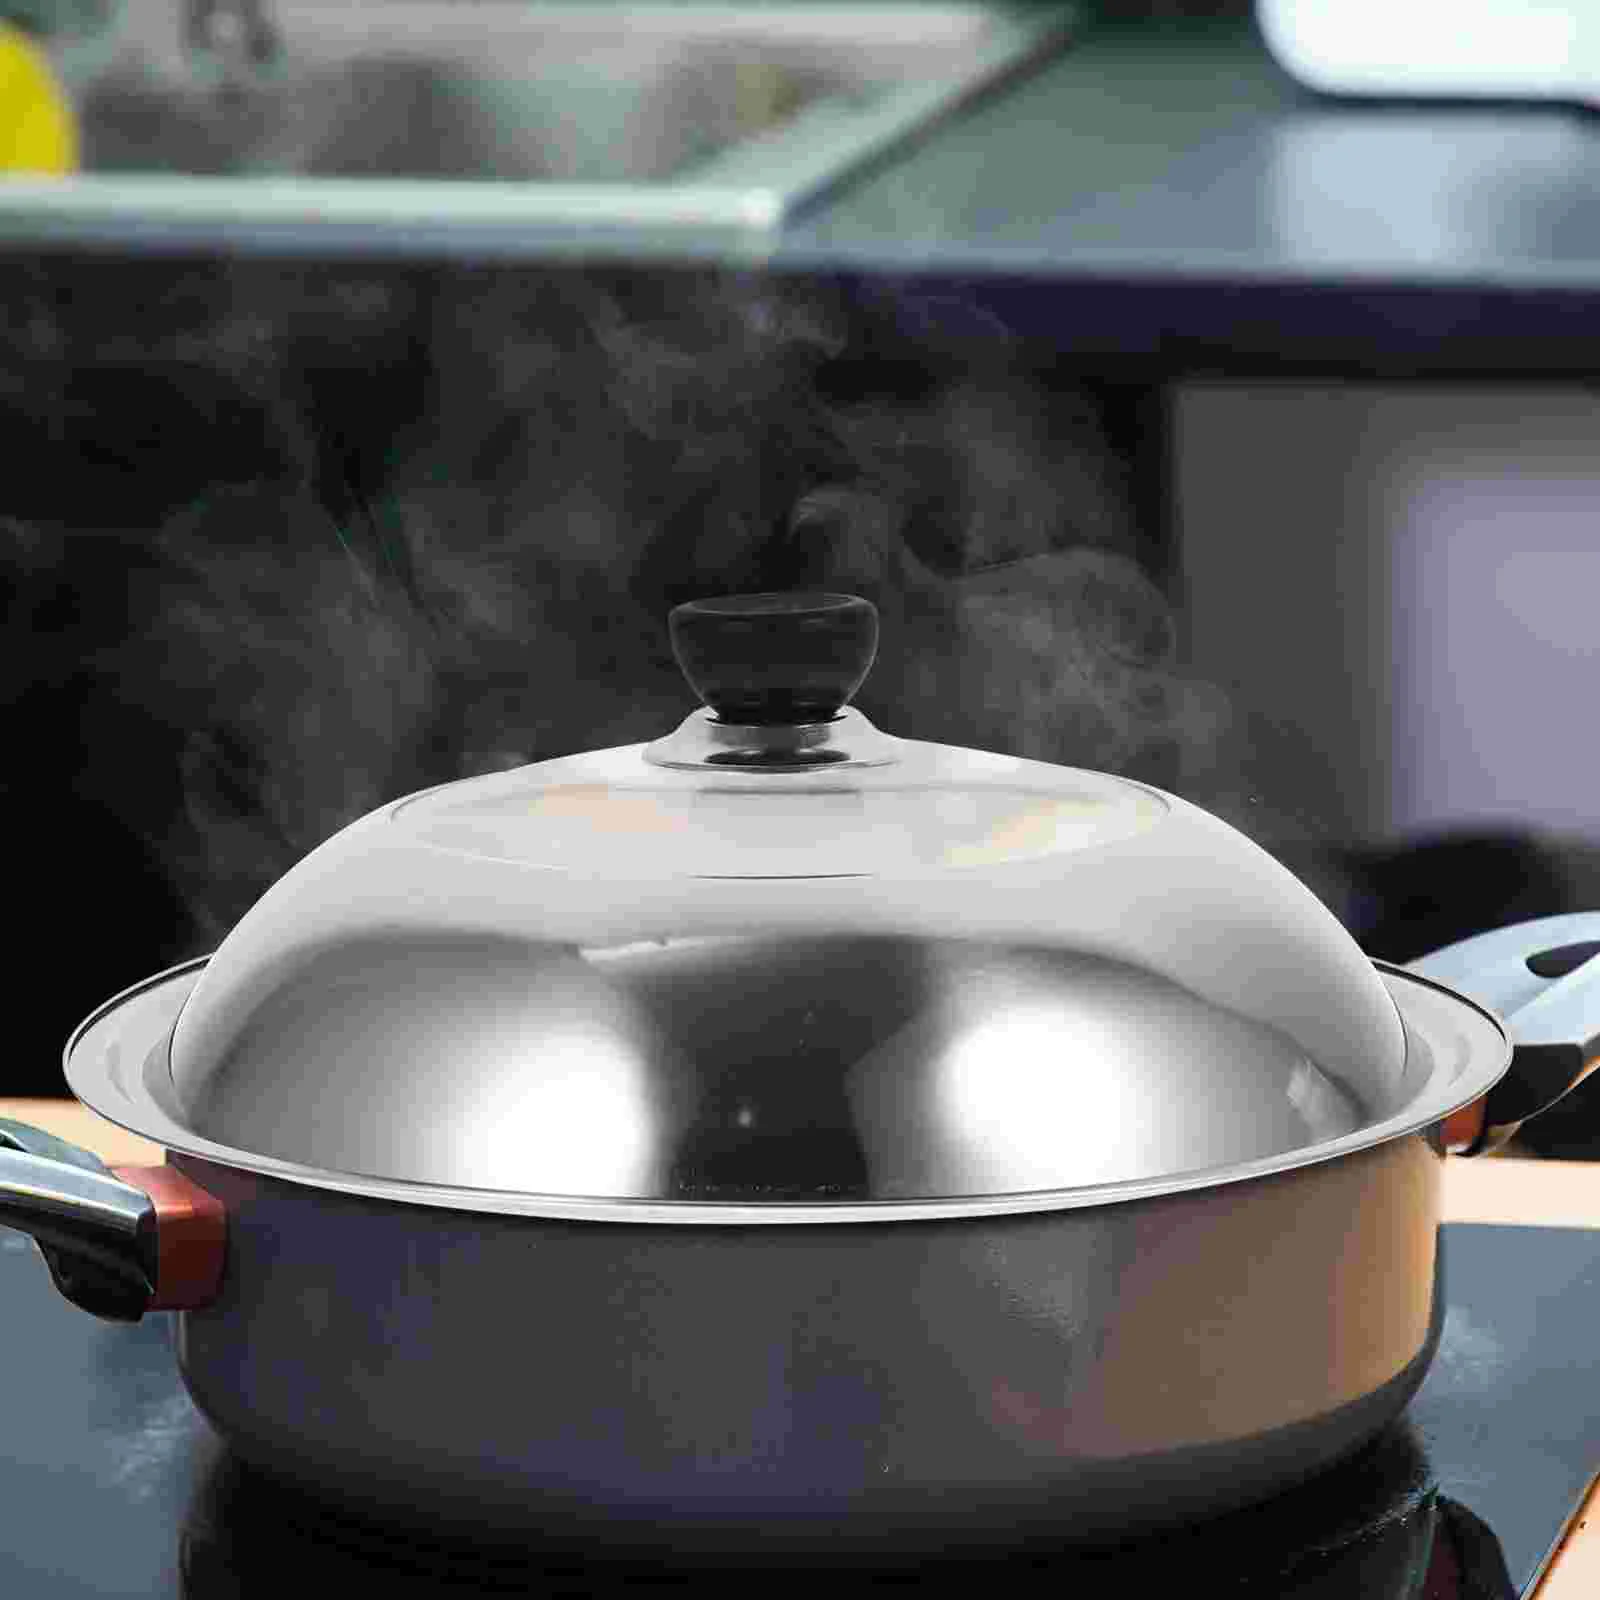 

Kitchen Gadget Cooking Tool Pot Lid Anti Oil Splashing Cover Microwave Stainless Steel Anti-splash pan